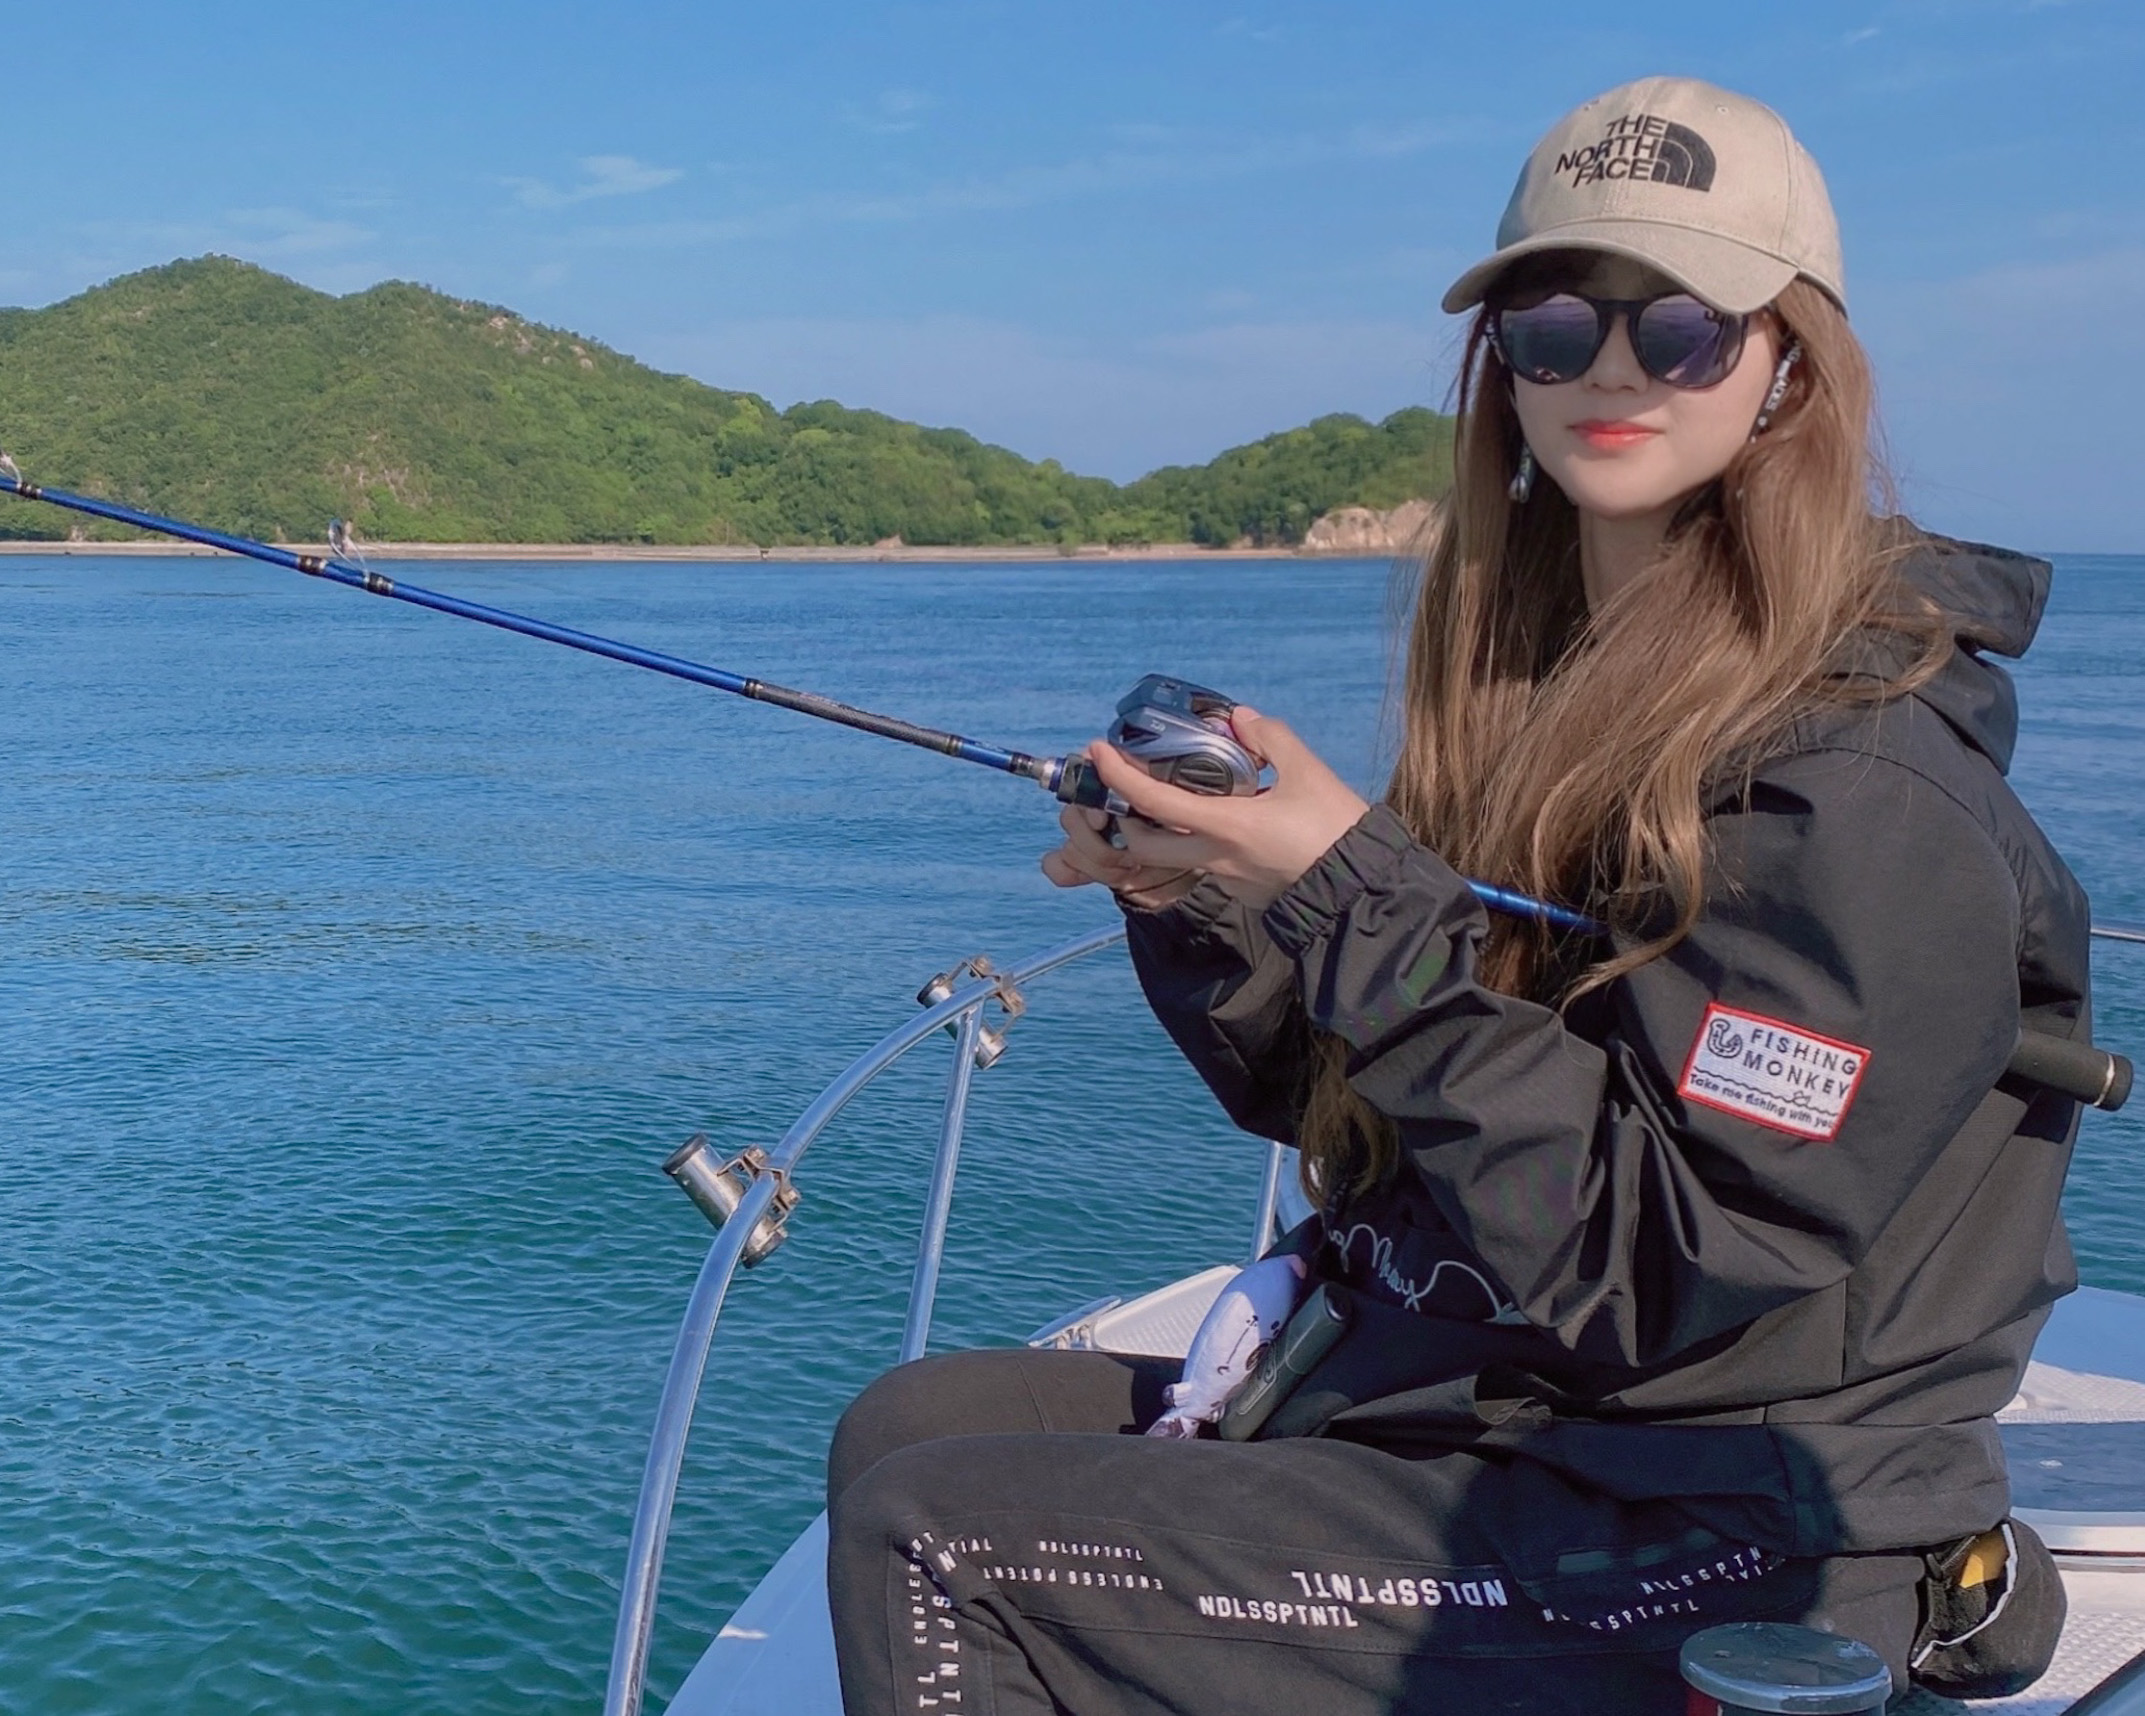 Marieの夏の釣りコーディネート21年版 女性におすすめの日焼け対策もご紹介 釣りガール 女性のための釣りコミュニティ